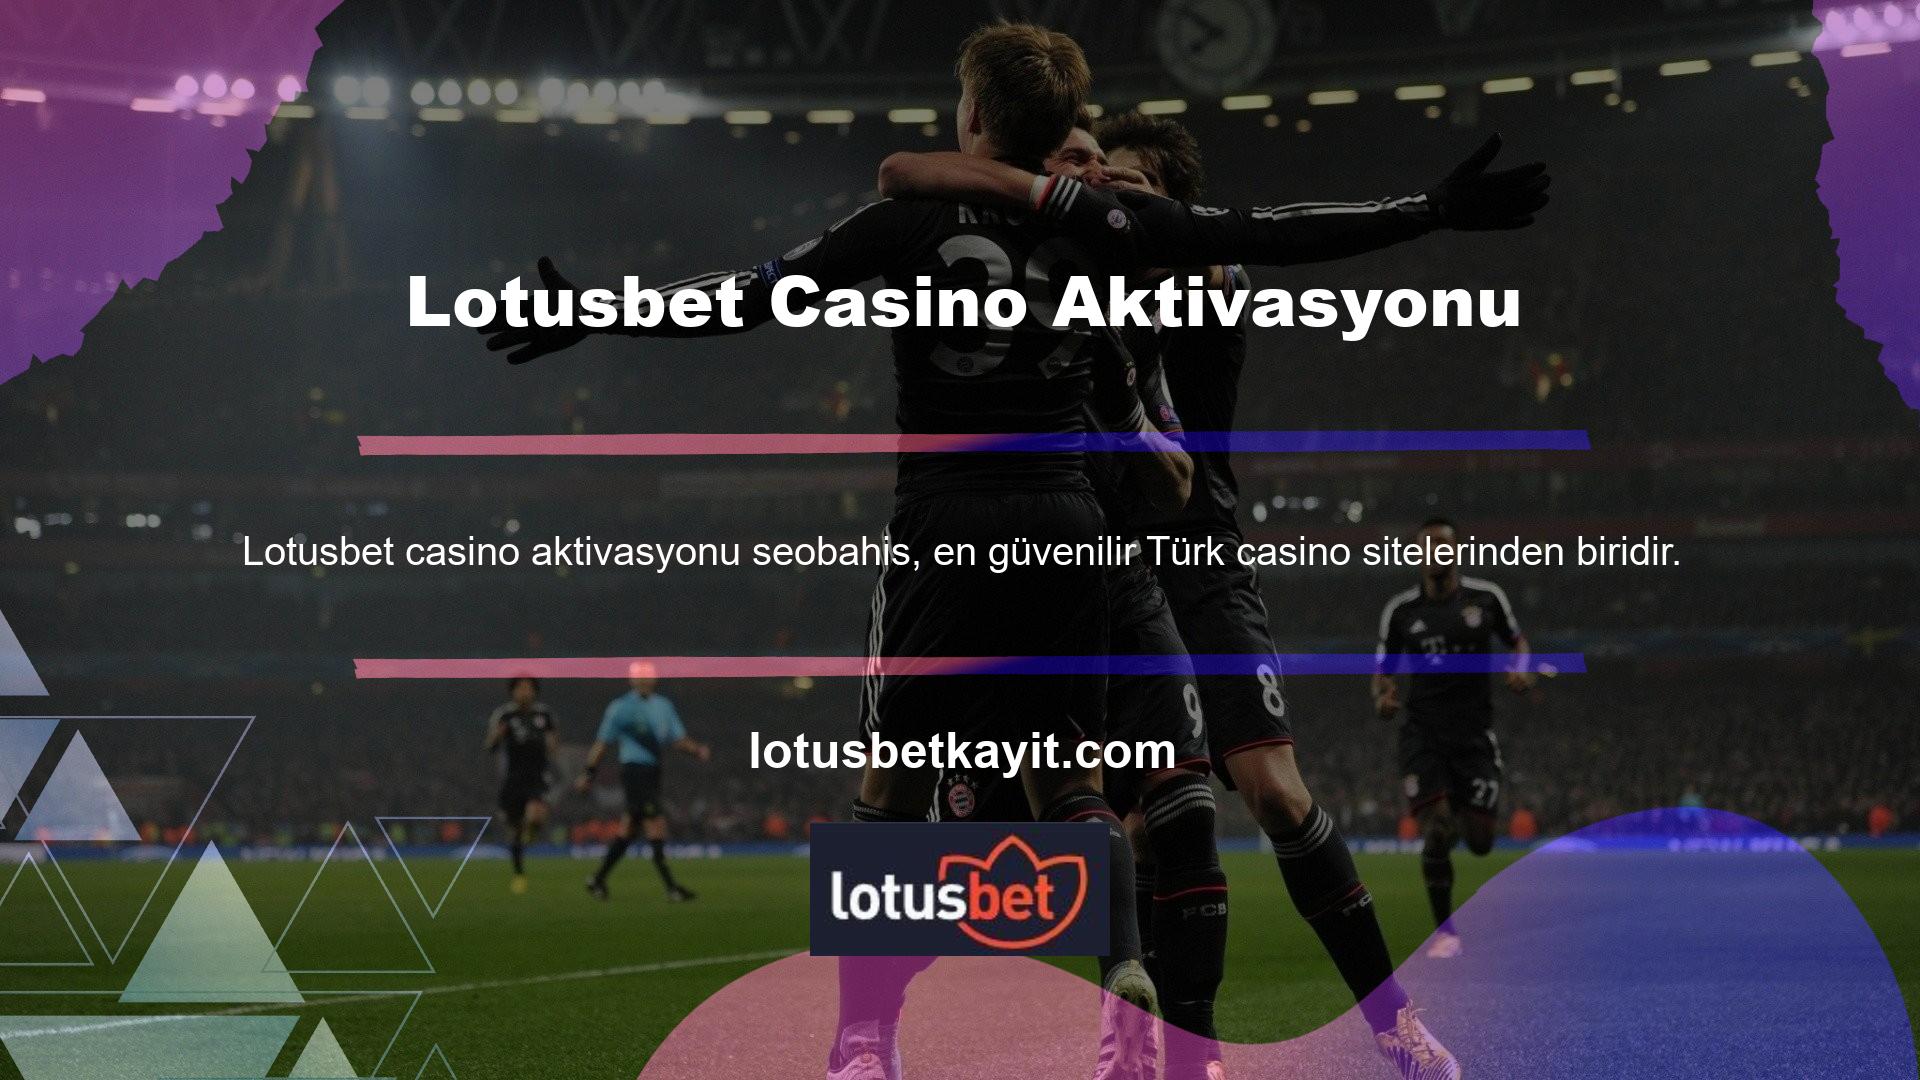 Lotusbet Casino Aktivasyonuna katılın ve oyundaki en iyi casino ve oyun deneyimiyle kazanmaya başlayın! Lotusbet Giriş butonunu kullanarak Lotusbet doğrudan erişebilirsiniz